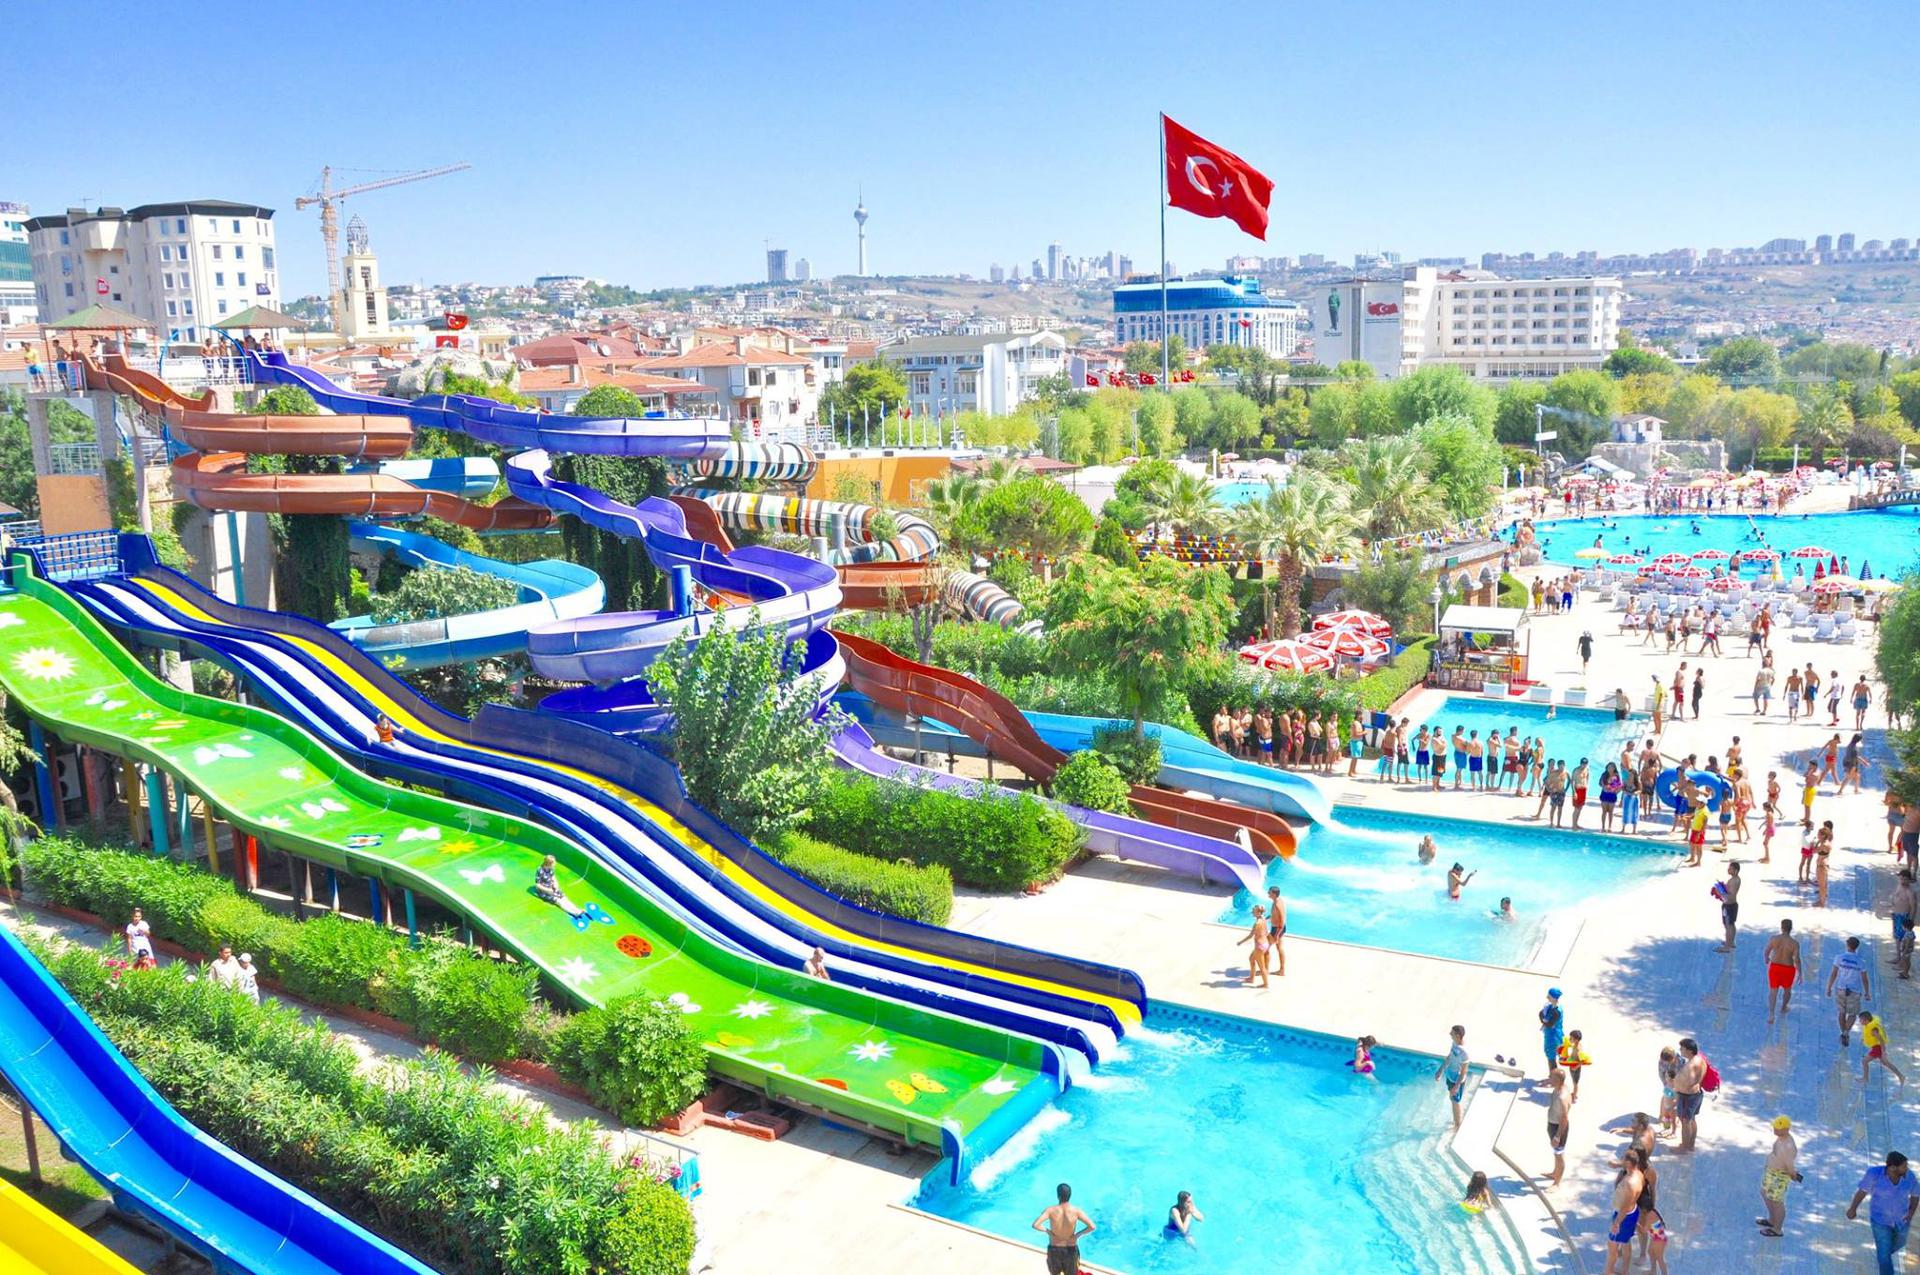 tatile gidemeyenlere istanbul daki en iyi aquaparklar ve yuzme havuzlari